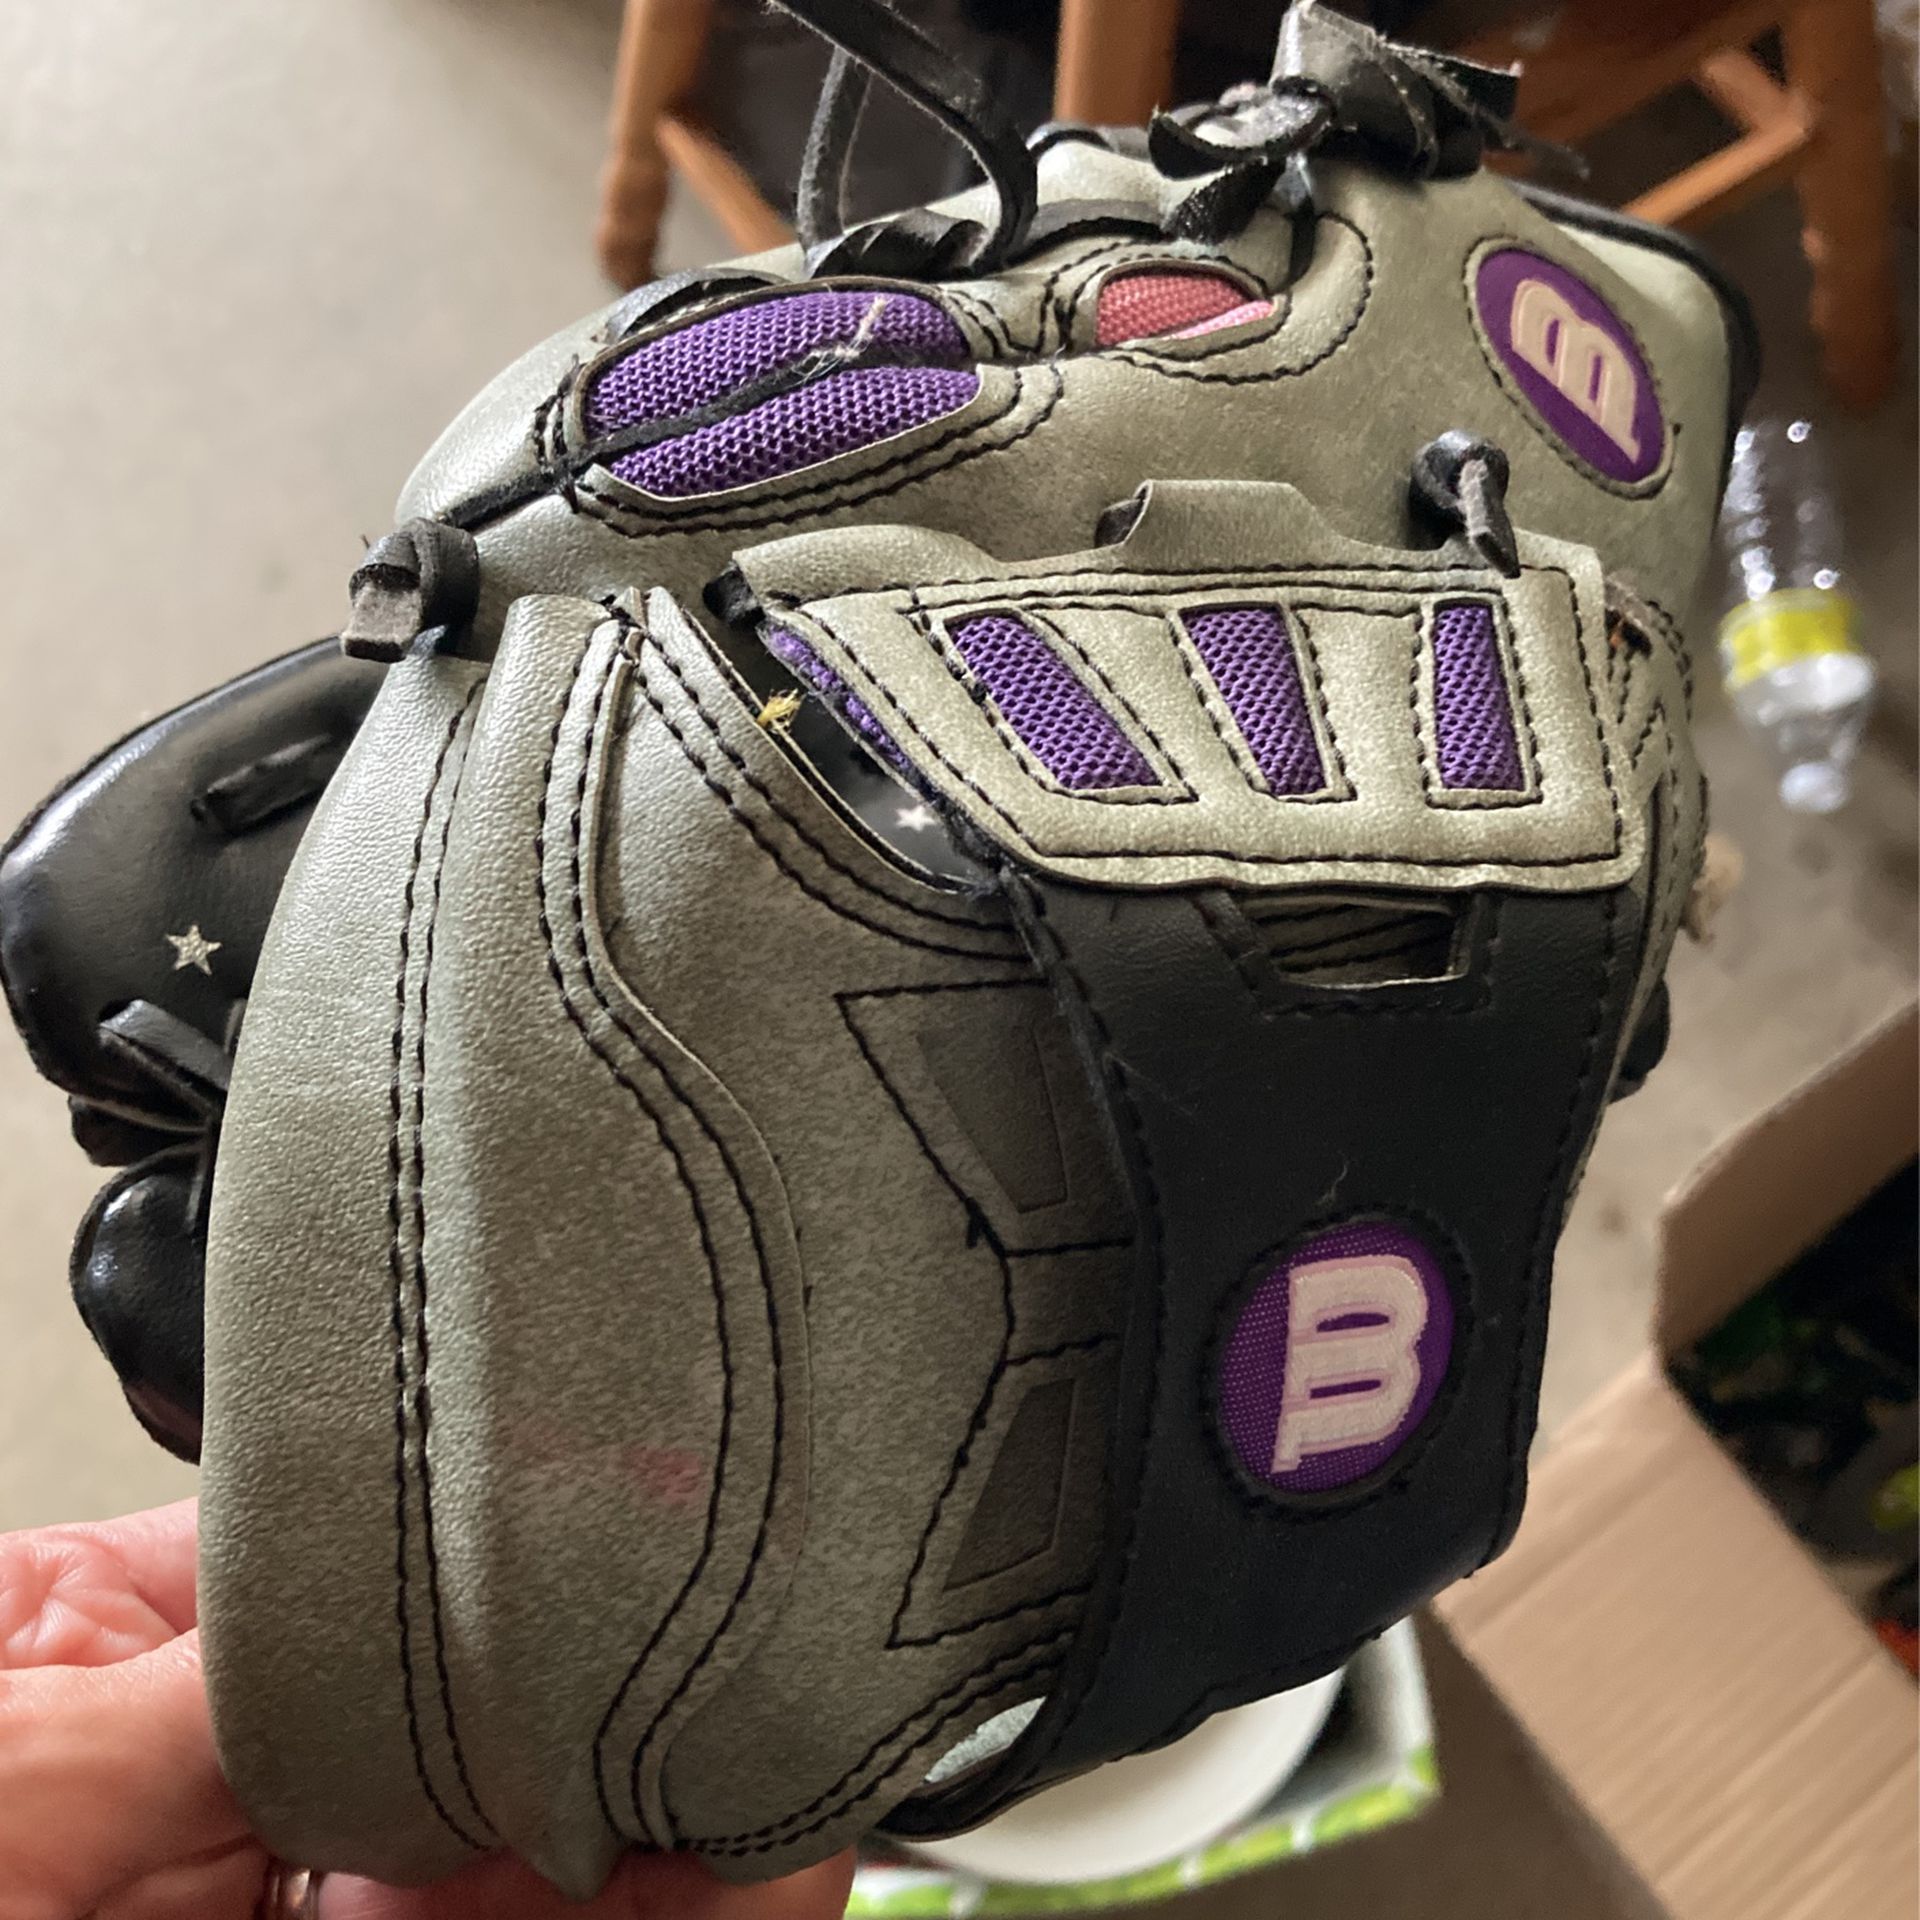 Girls Softball Glove $5